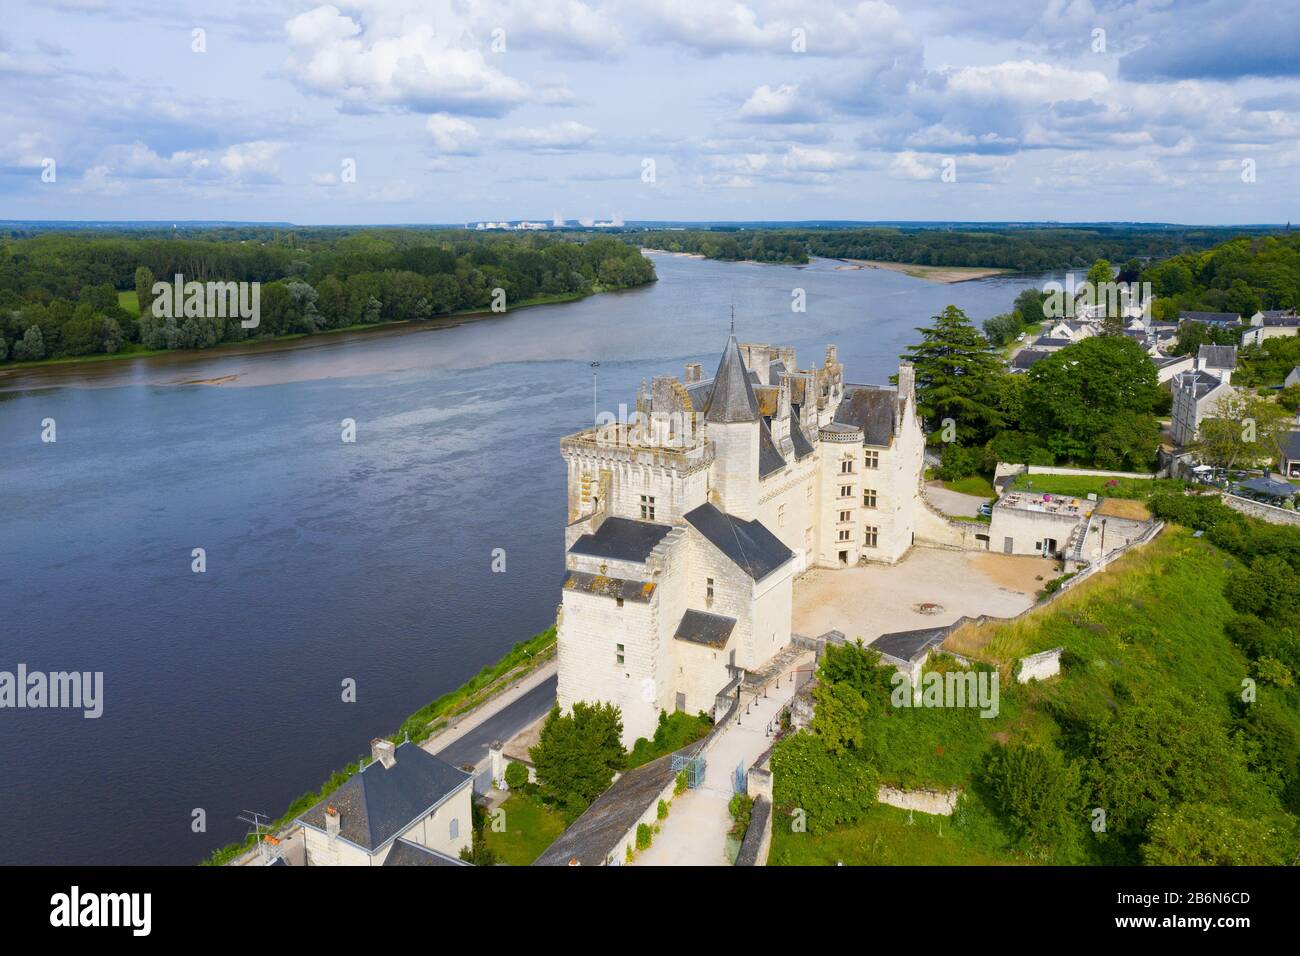 Luftbild des Schlosses von Montsoreau am Zusammenfluss von Loiré und Vienne. Montsoreau (Die Schönsten Dörfer Frankreichs genannt), Main Stockfoto